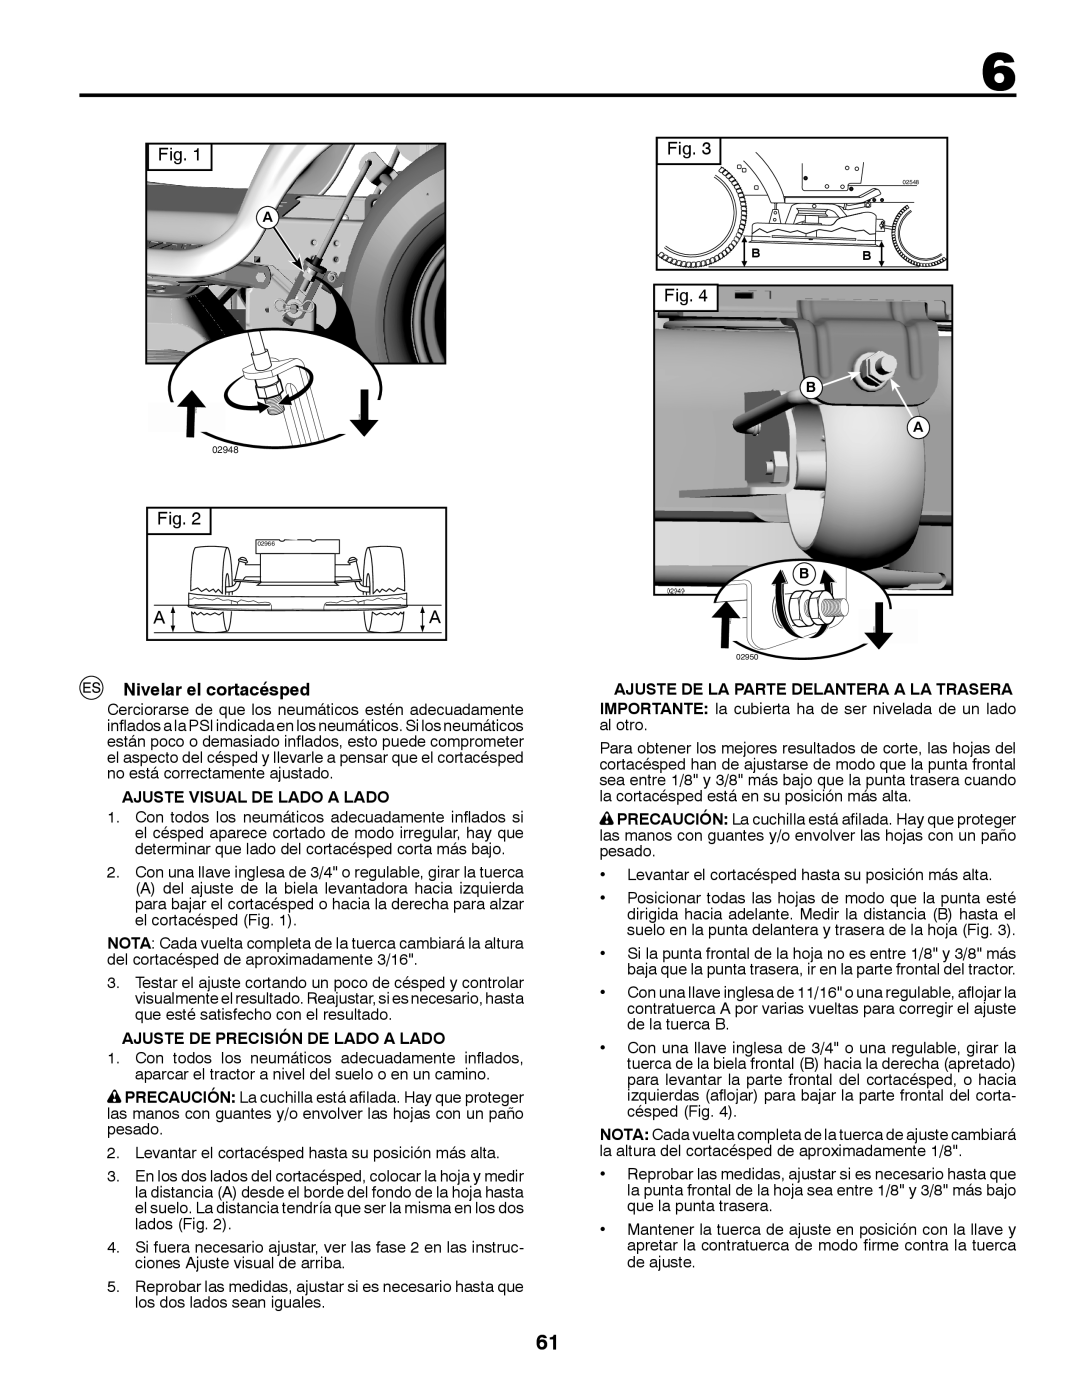 Husqvarna LT126 instruction manual Nivelar el cortacésped, Ajuste Visual De Lado A Lado, Ajuste De Precisión De Lado A Lado 